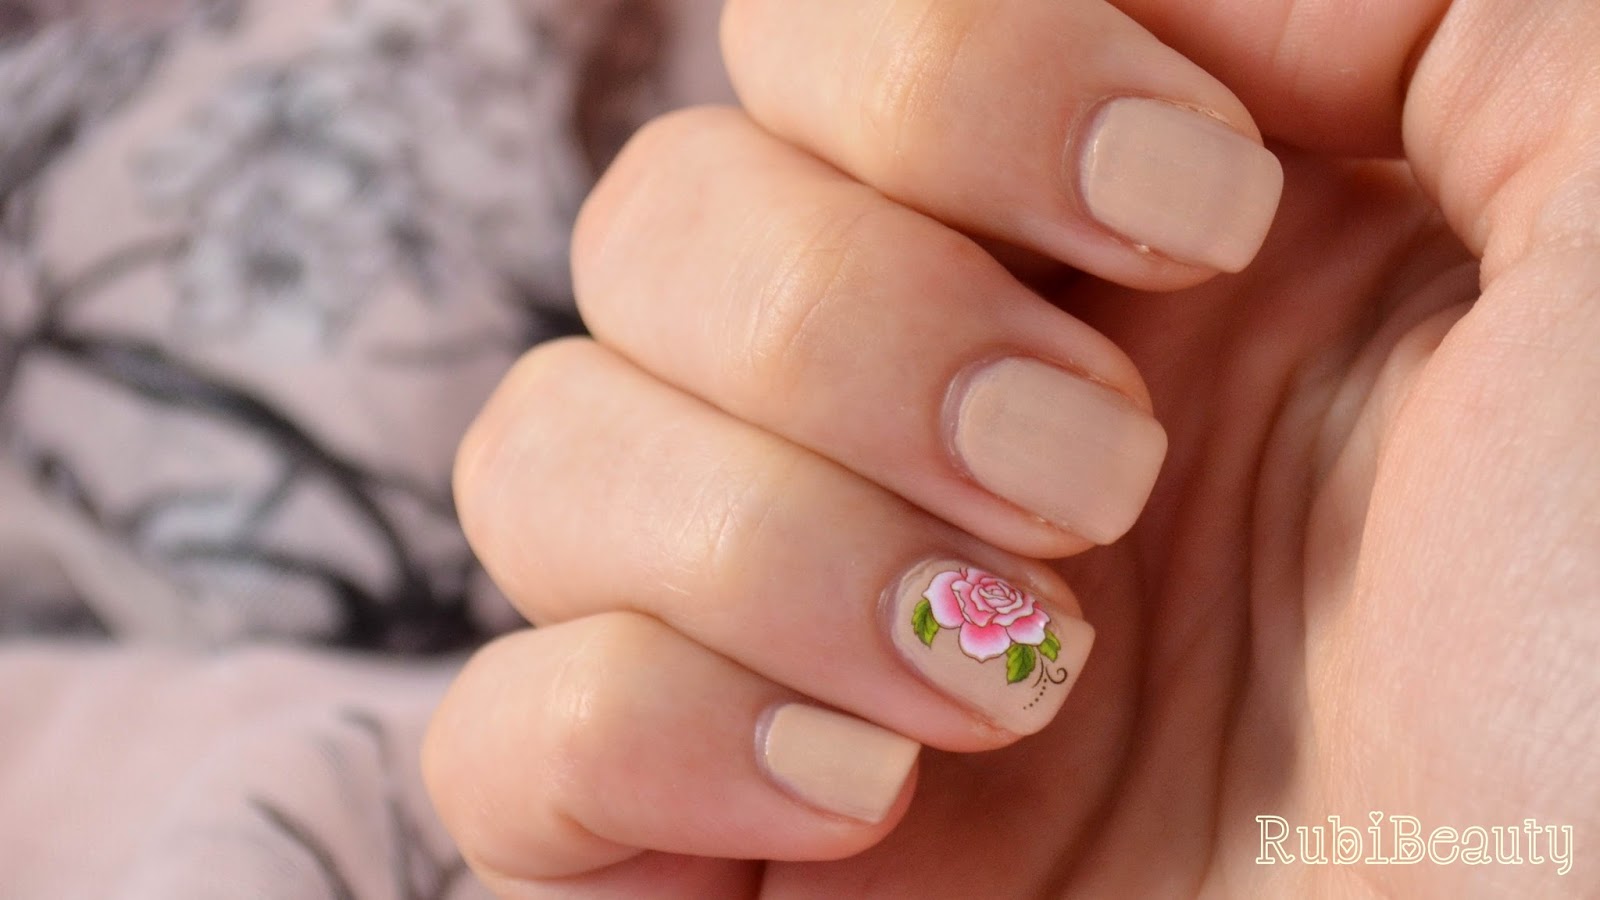 nail art sencillo romantico rosas nude water decals bornpretty store BPS rubibeauty